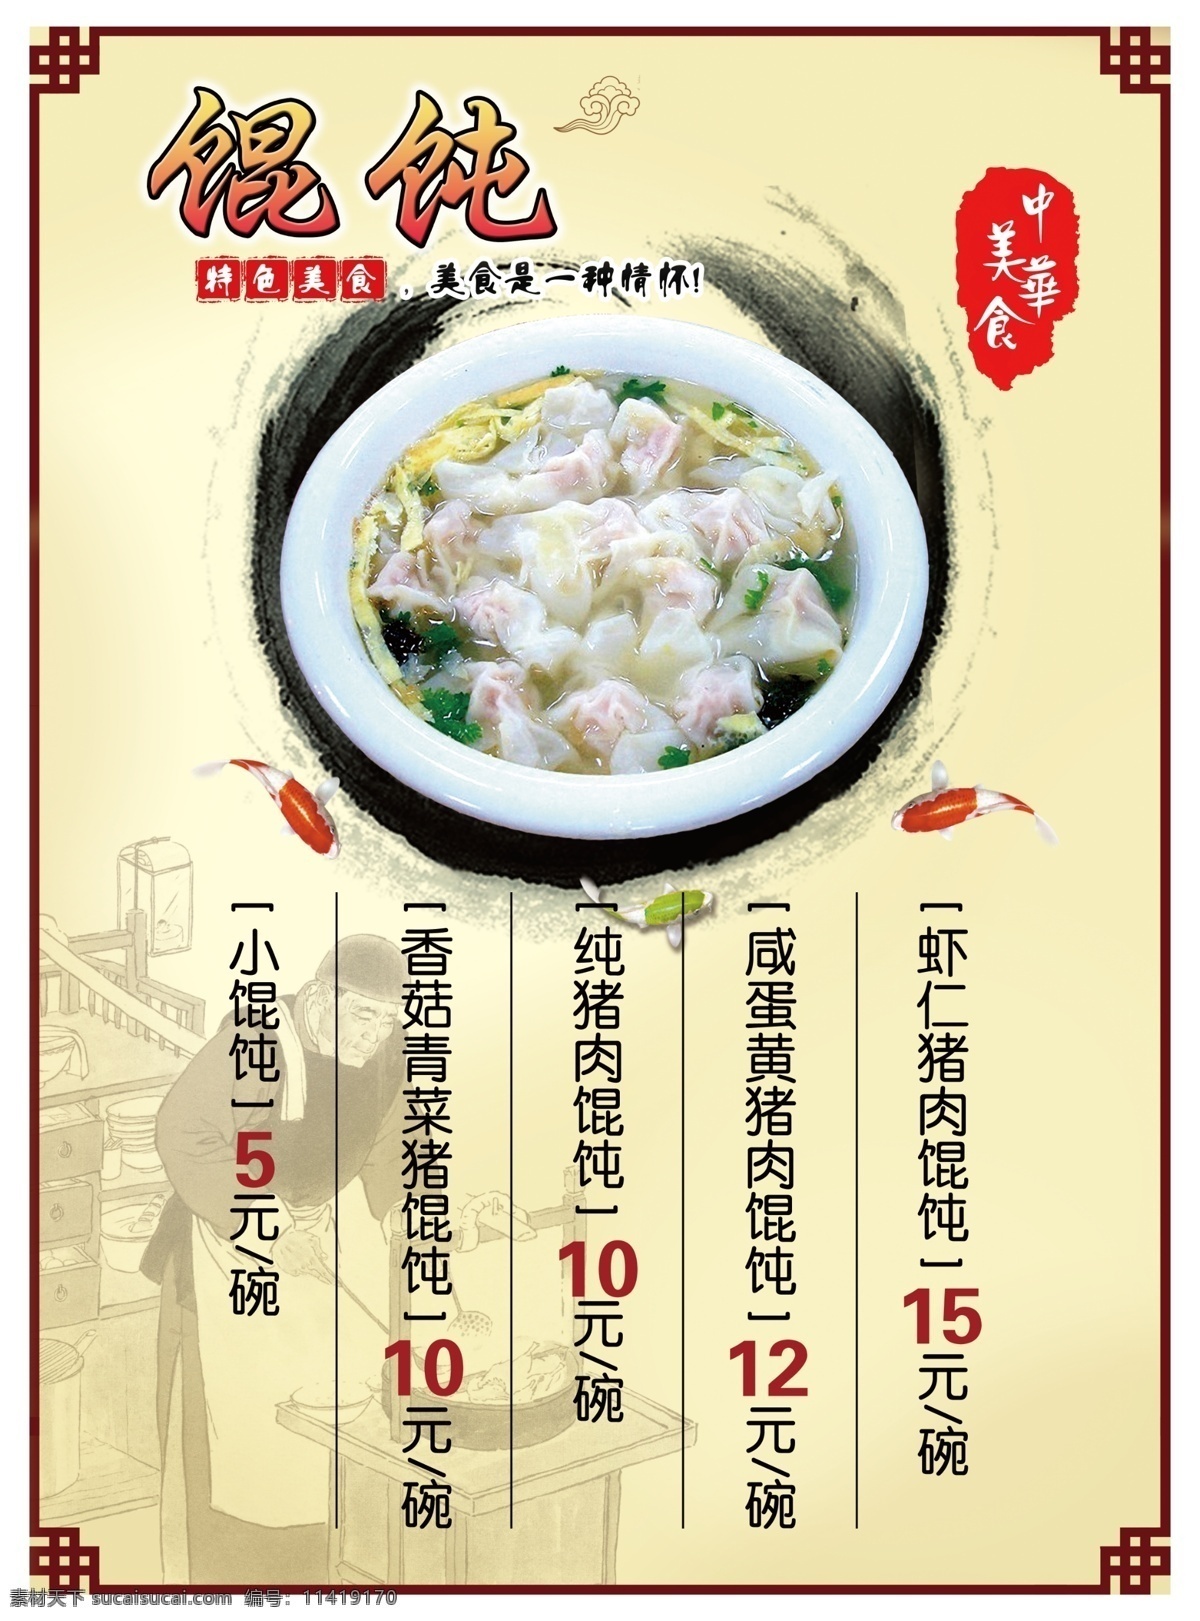 中华美食 馄饨 价目表 特色 美食 菜单菜谱